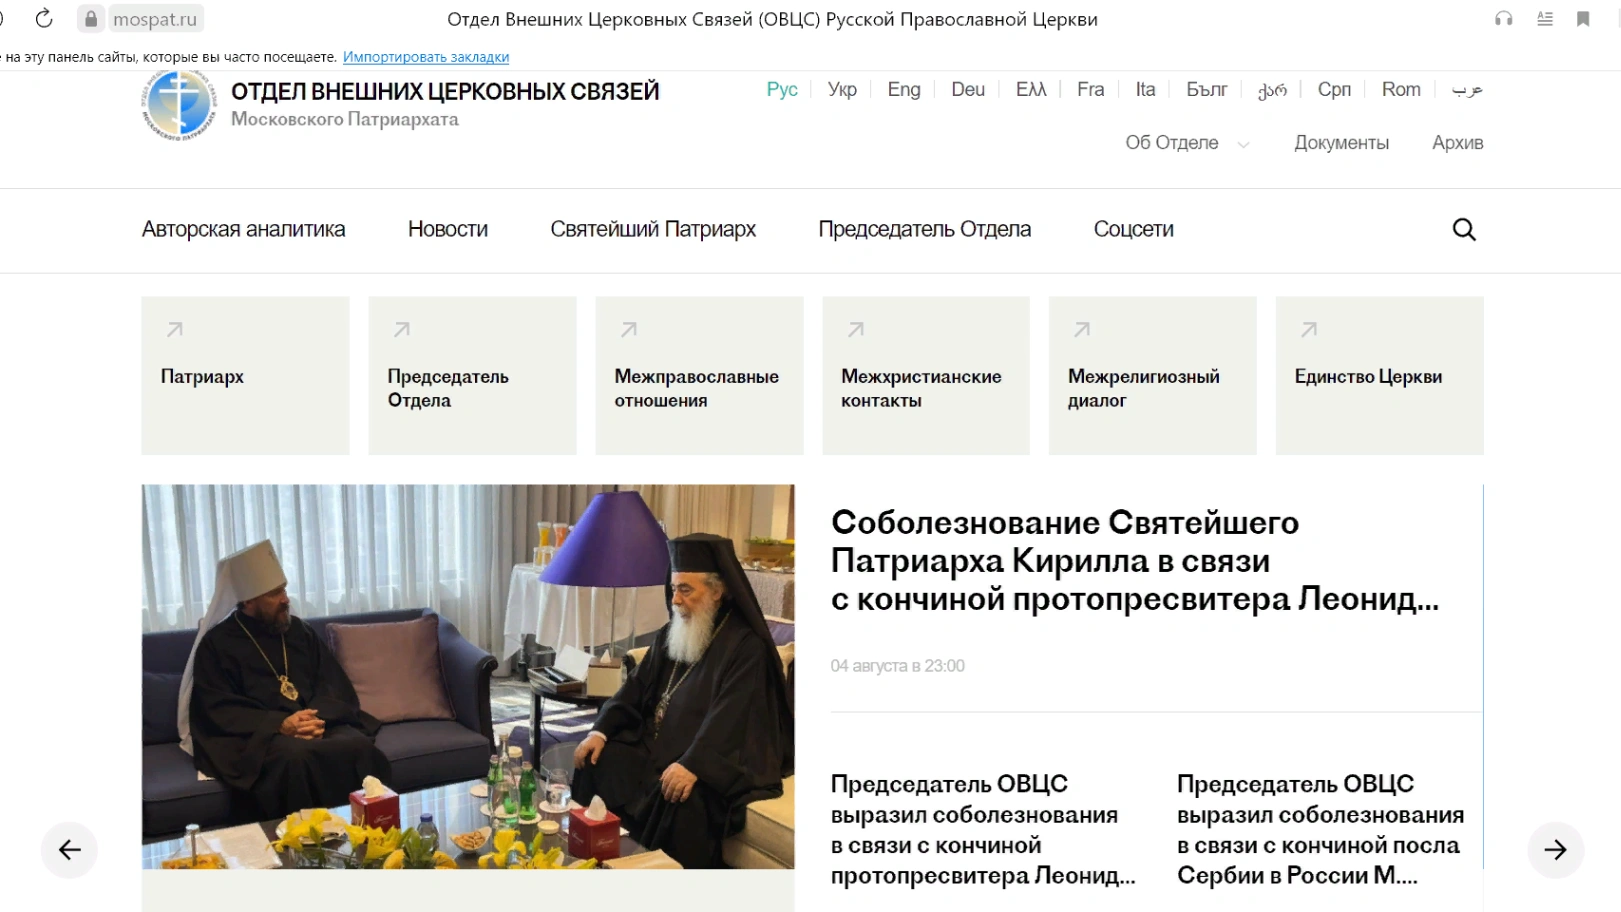 Création d & apos; un site Web sur les activités extérieures de l & apos; église orthodoxe russe